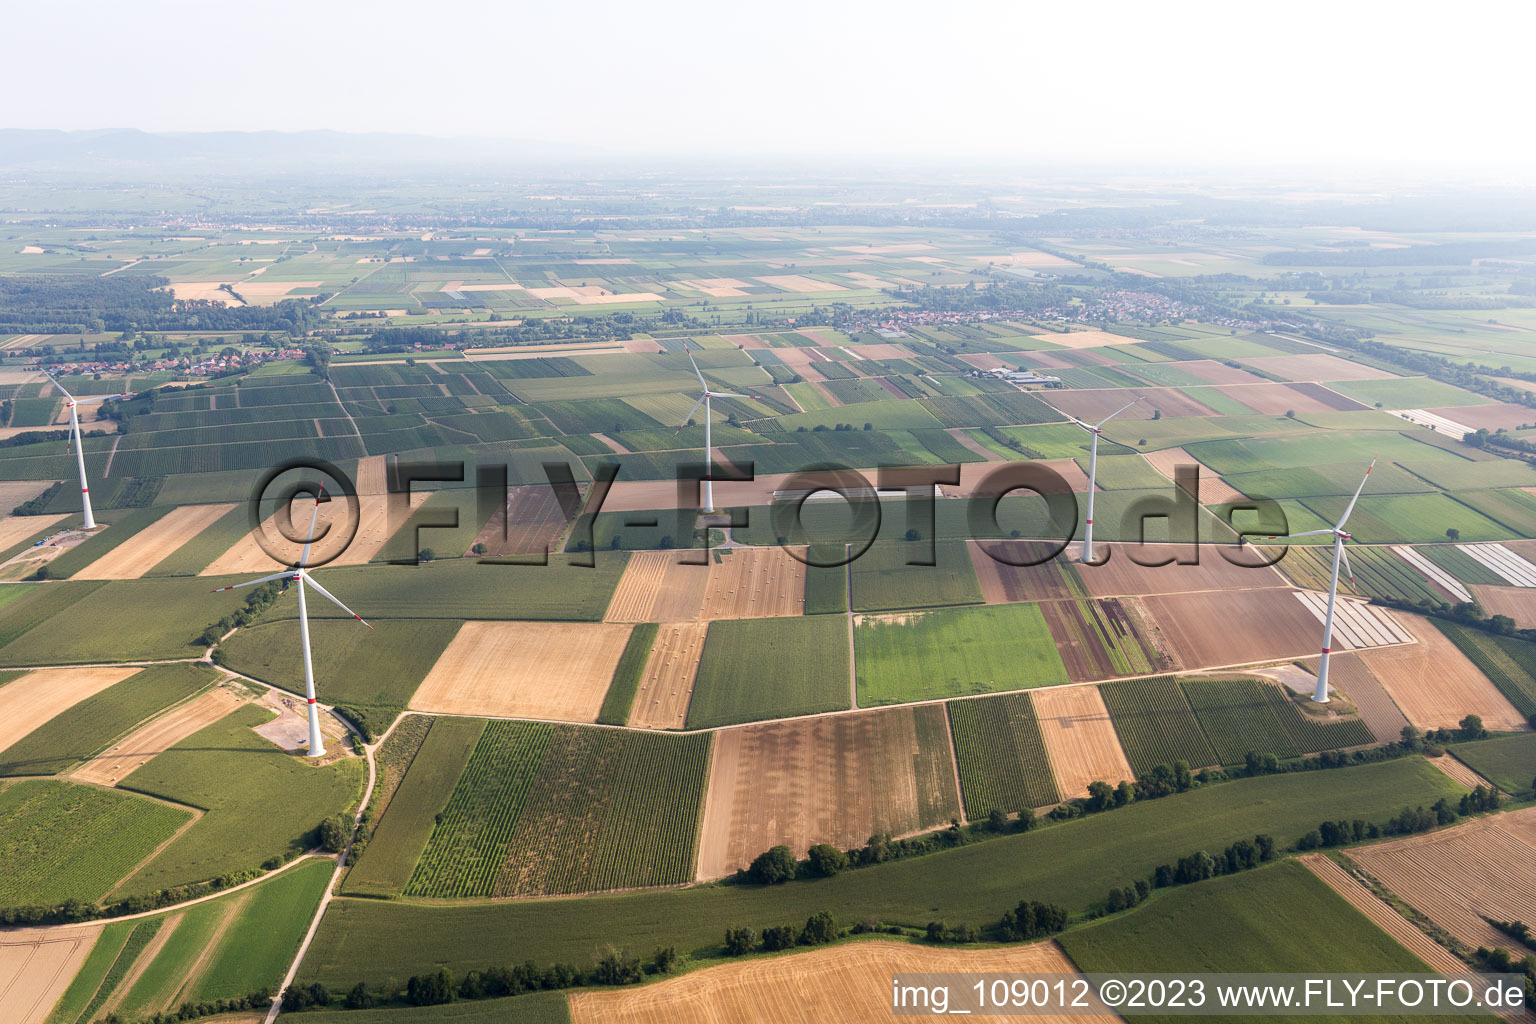 Vue aérienne de Parc éolien à Freckenfeld dans le département Rhénanie-Palatinat, Allemagne